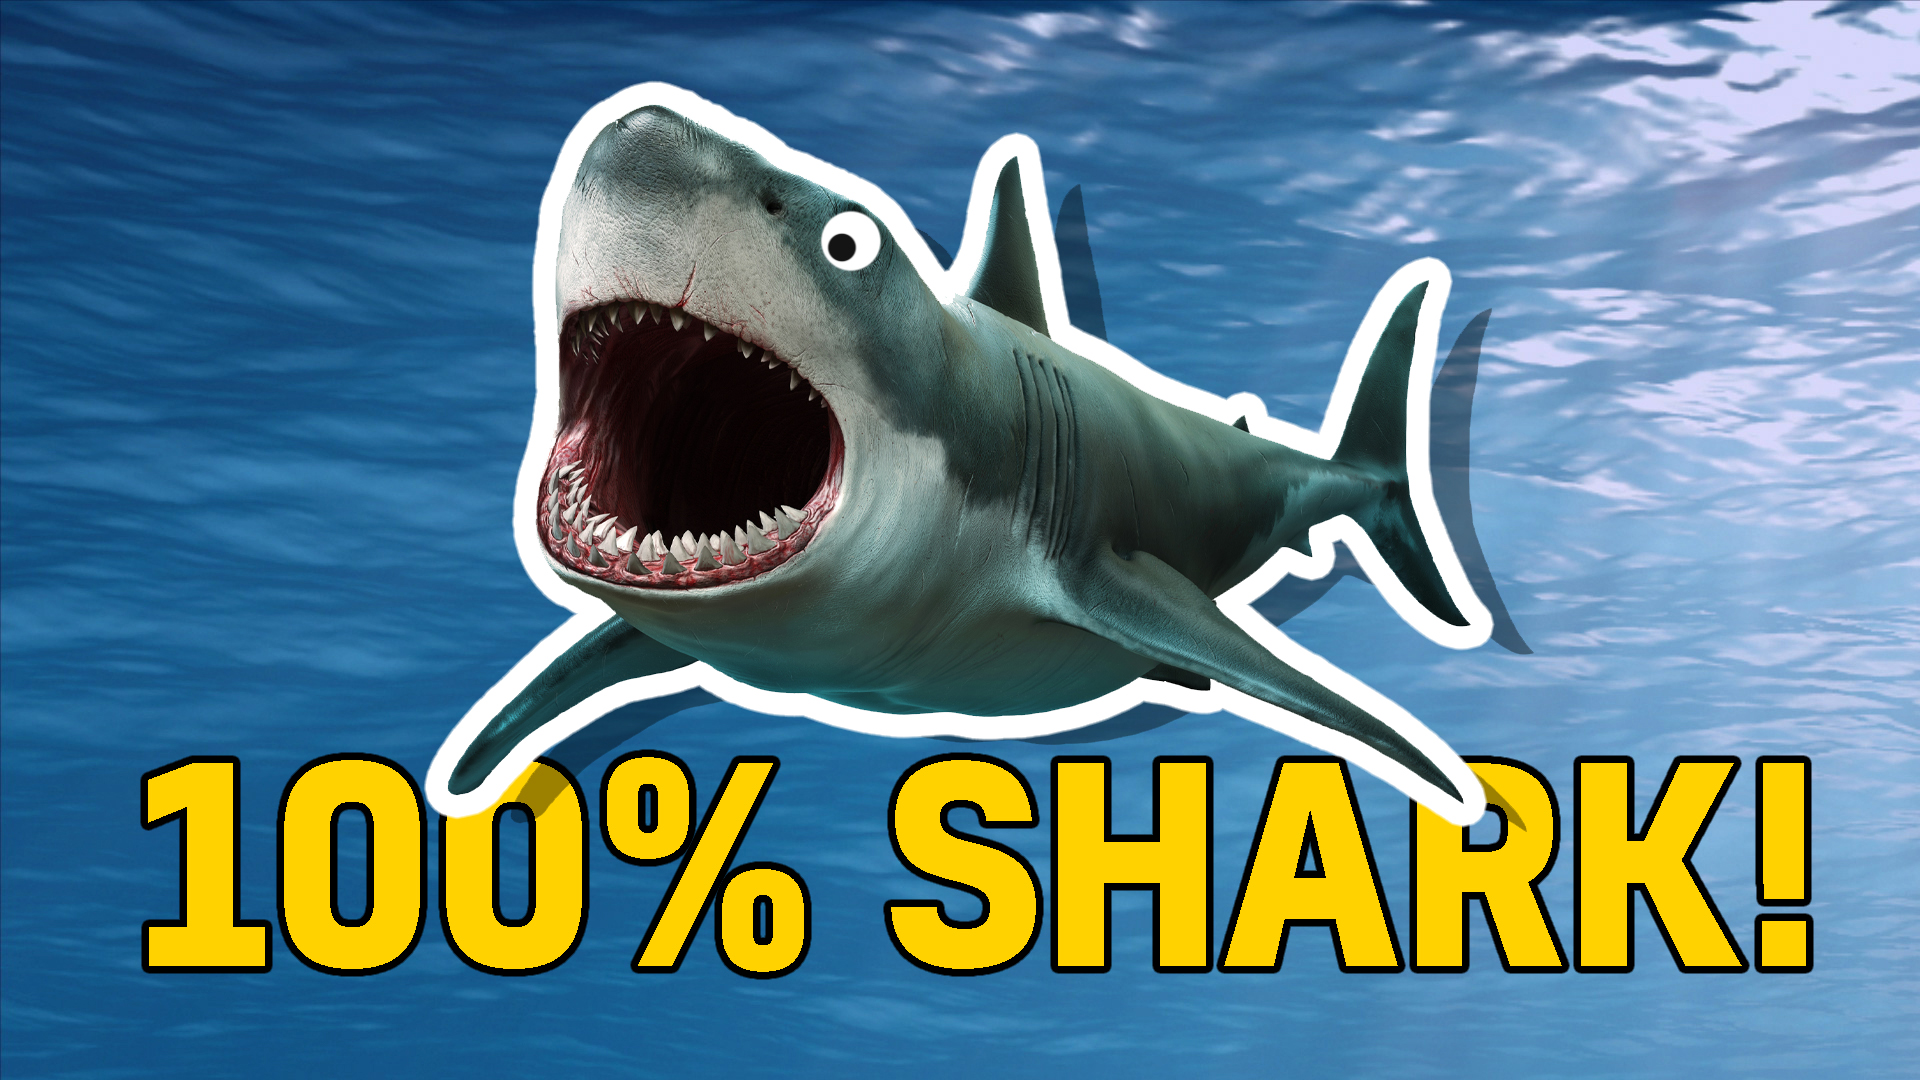 100% shark